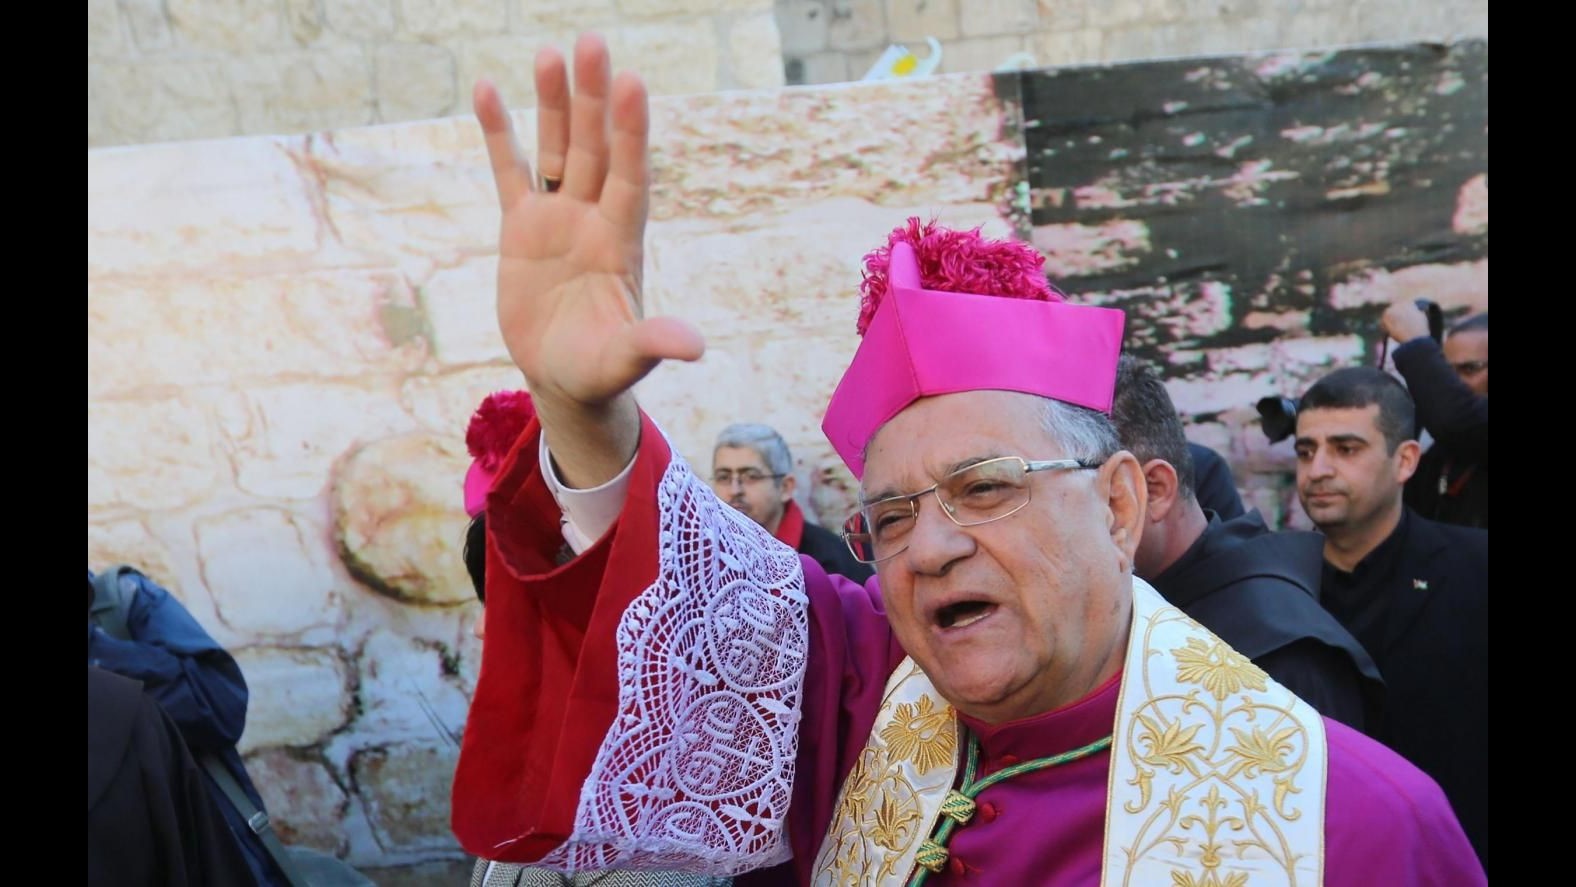 Natale, patriarca Gerusalemme: Regni la misericordia, non la vendetta